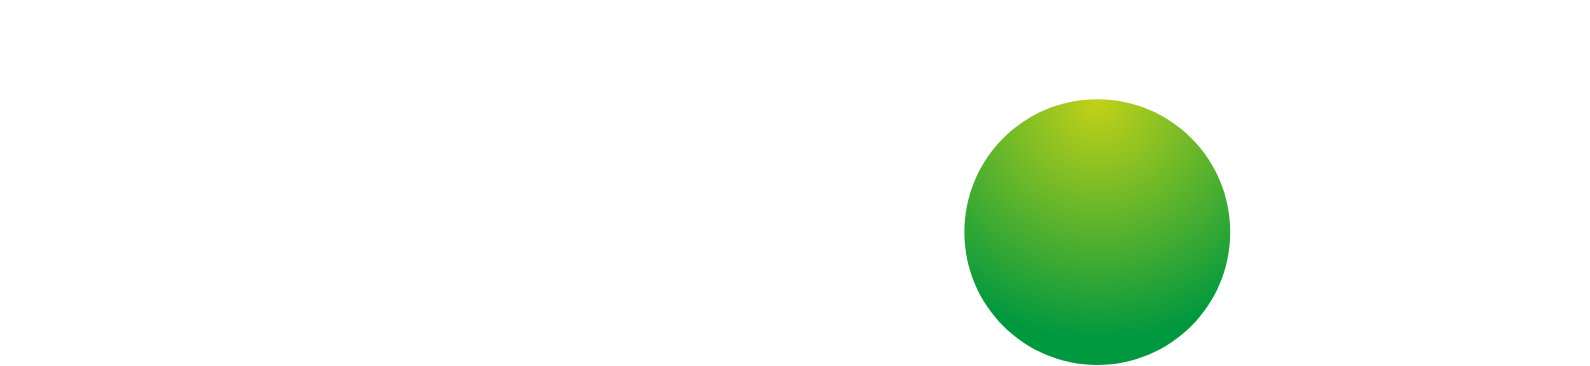 Kainos Group Logo groß für dunkle Hintergründe (transparentes PNG)